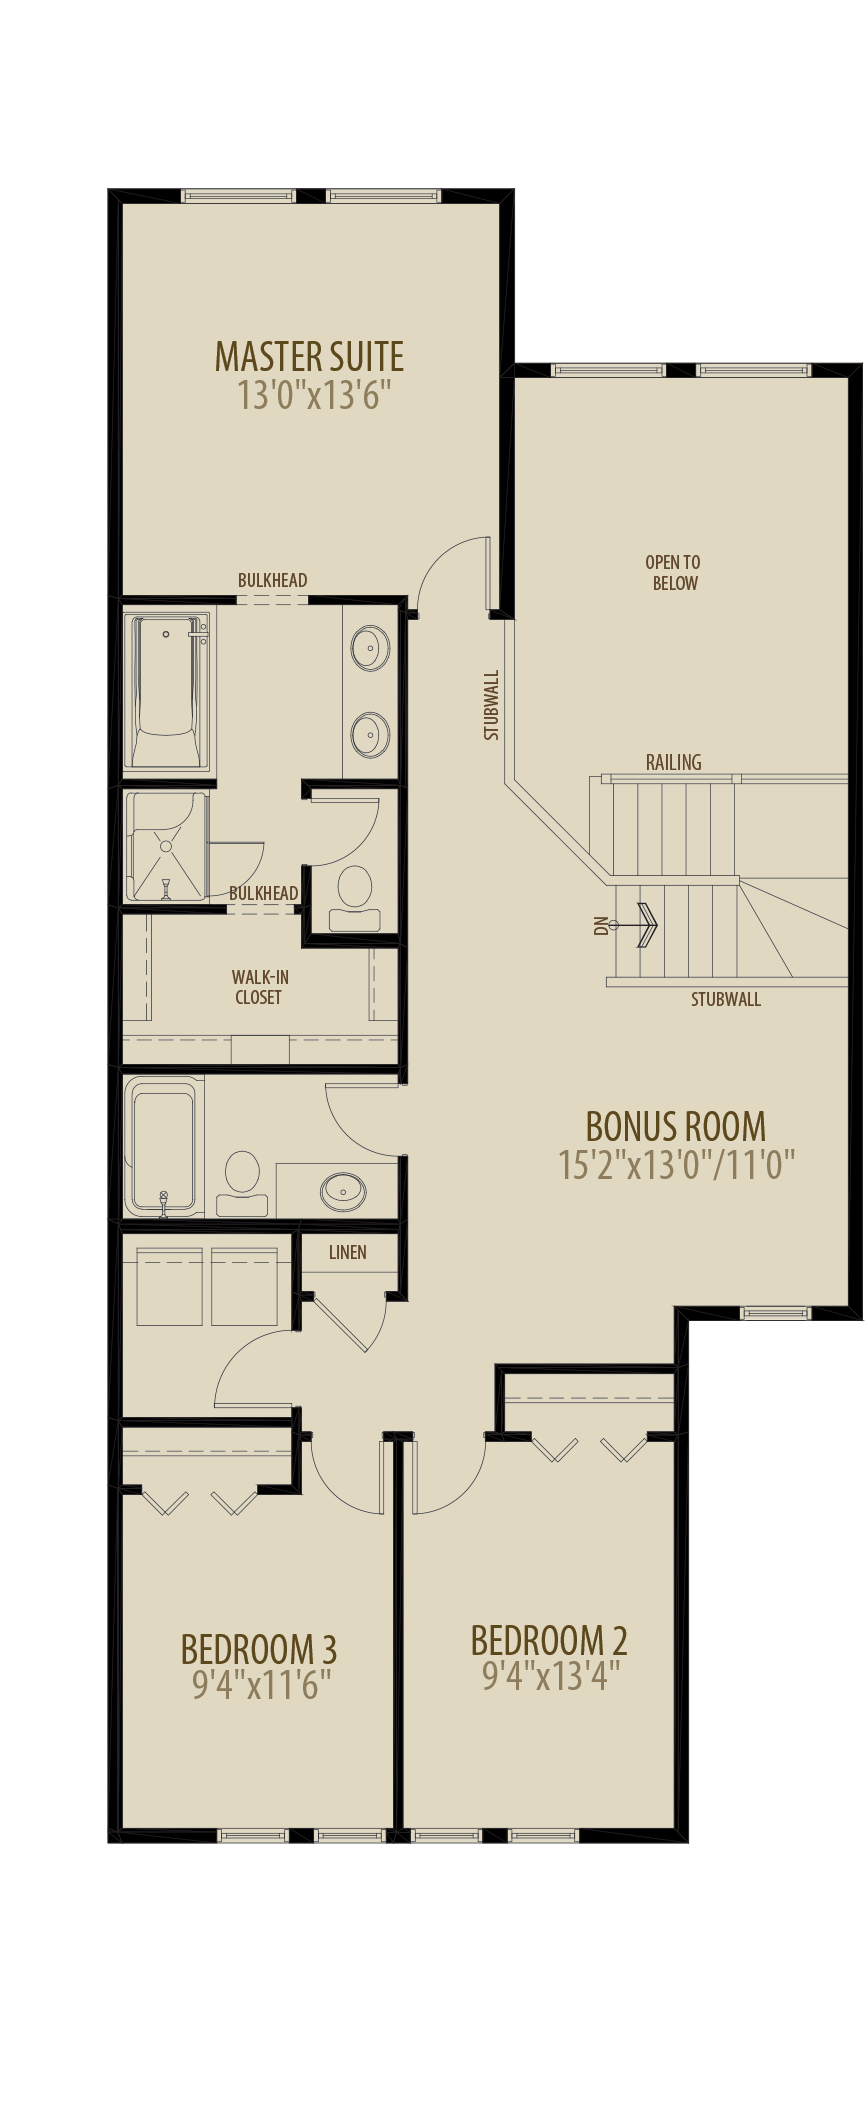 Open to below & Bonus Room (Reduces Upper Floor by 70 sq ft)